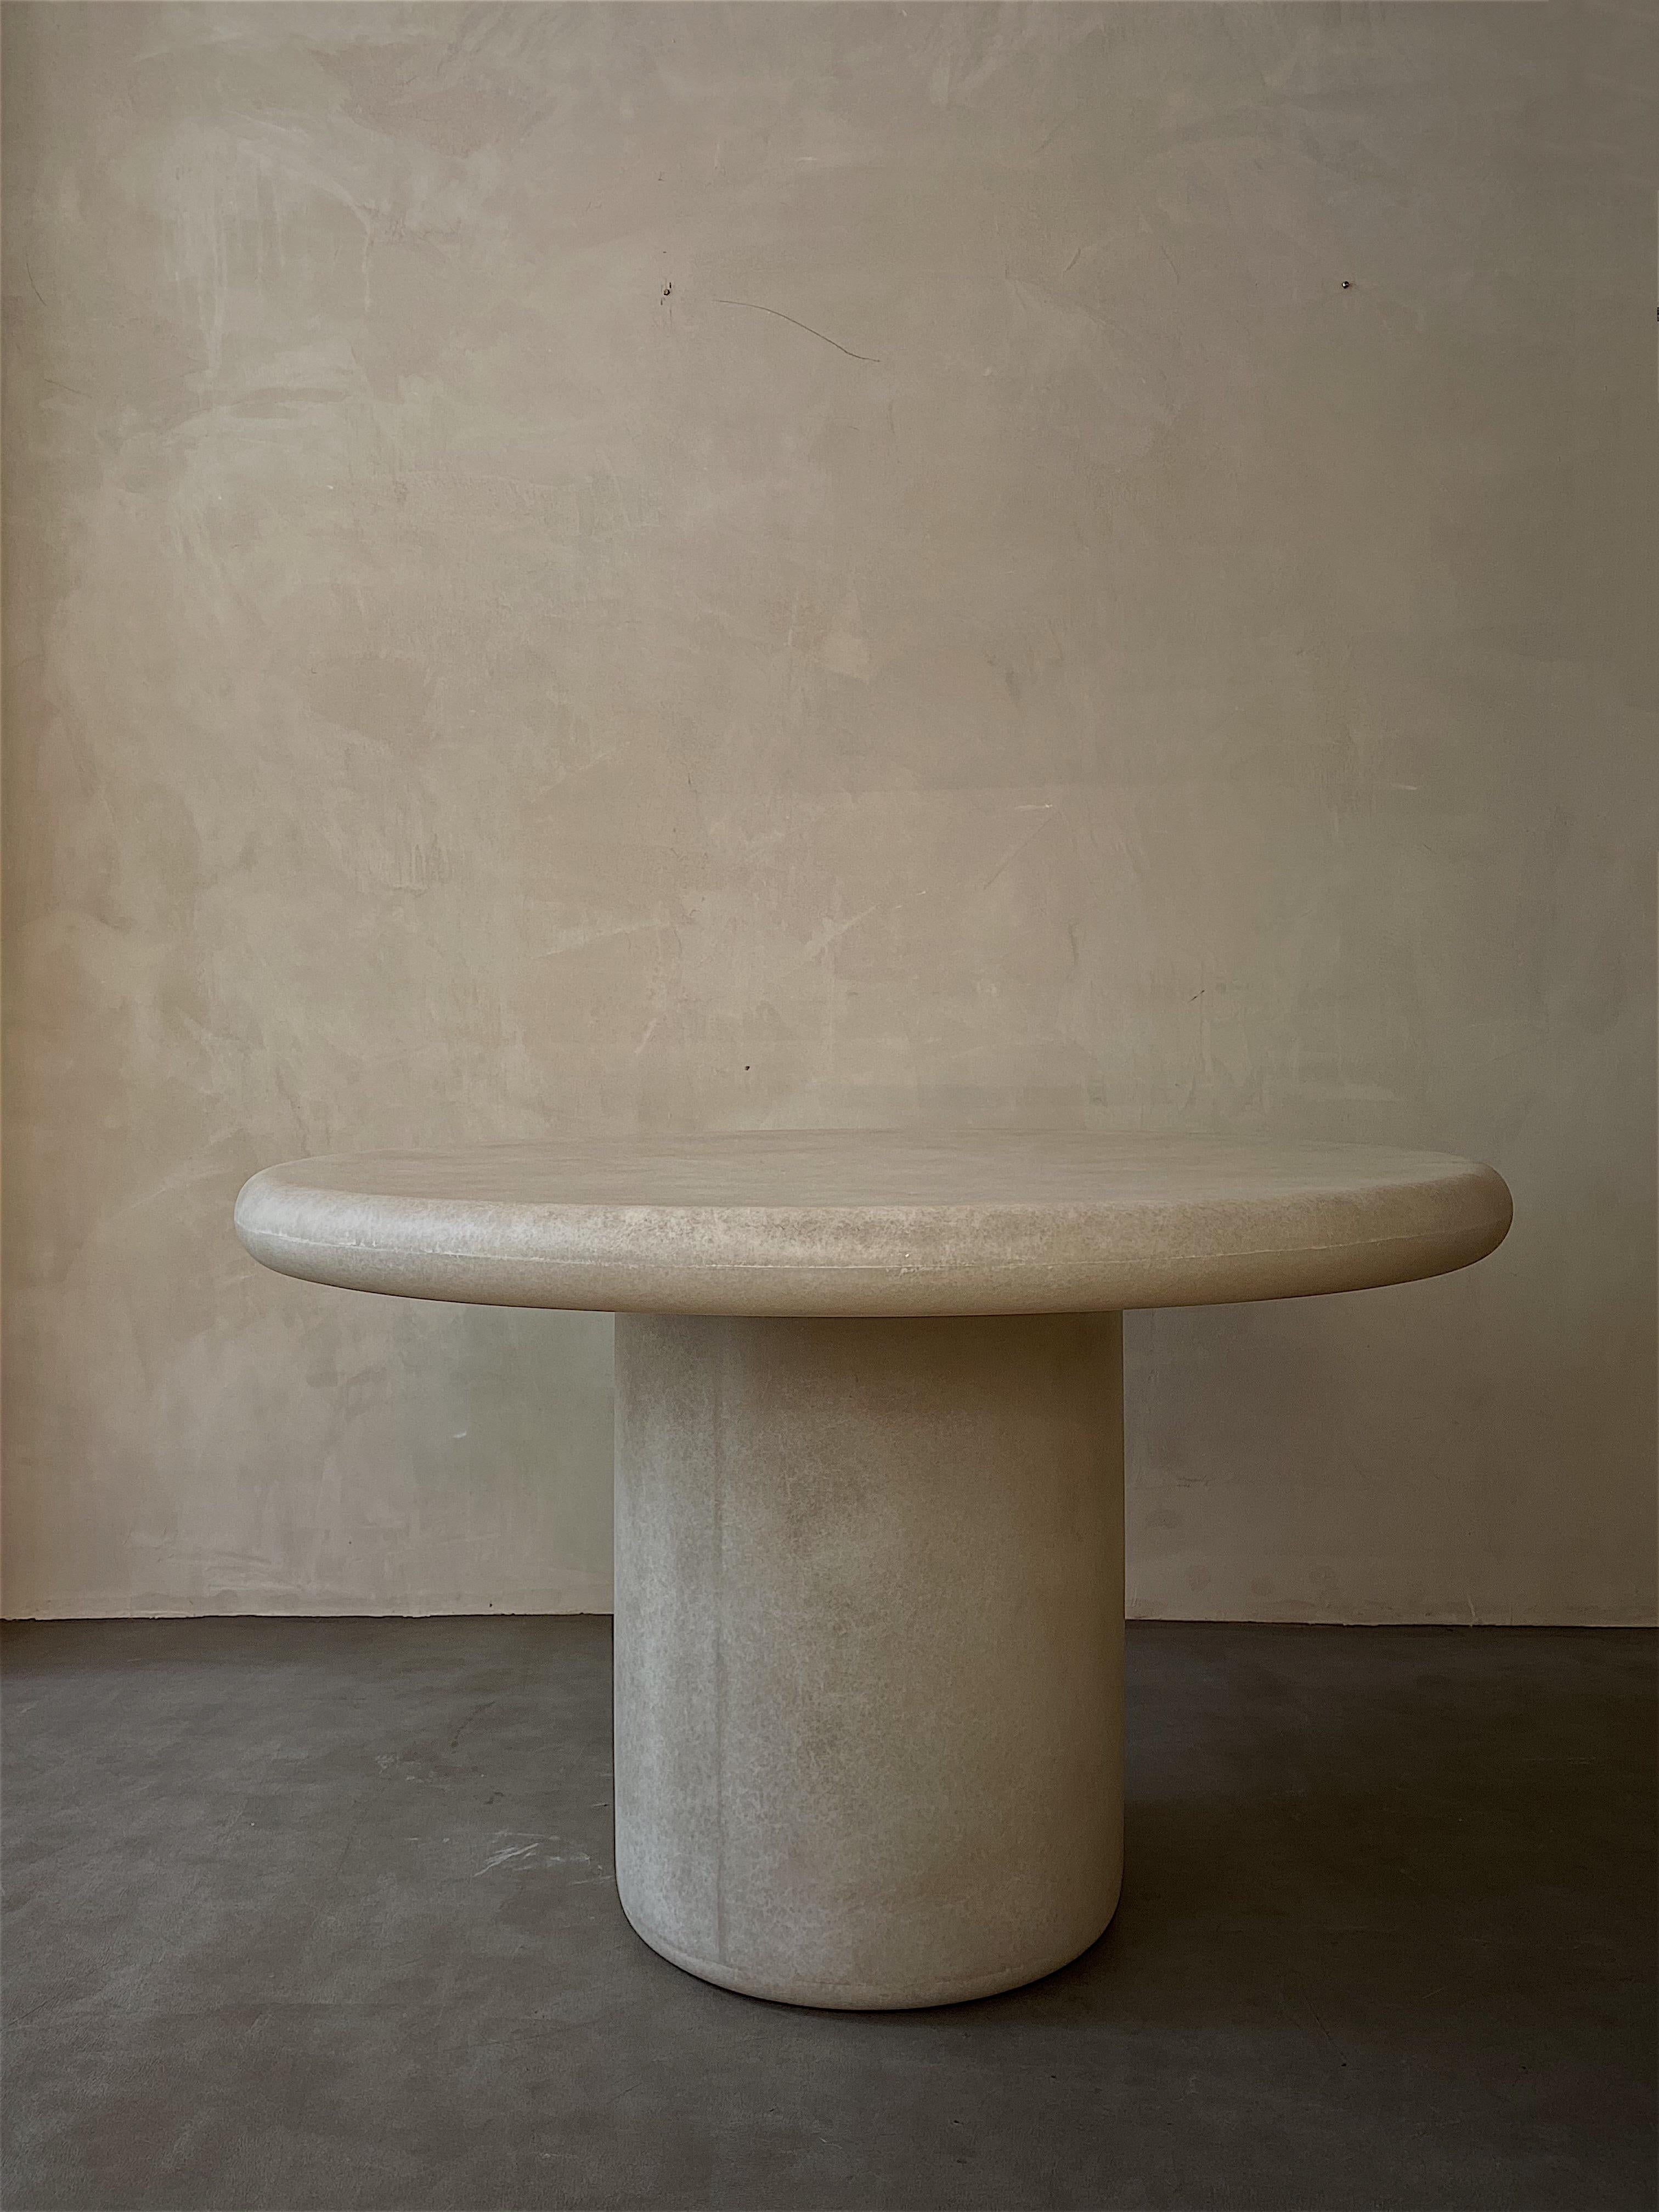 Table ronde blanche par kar
Matériaux : FRP
Dimensions : 120 x 74 cm : 120 x 74 cm

*Cette pièce peut être utilisée à l'extérieur.

Une combinaison de douceur et de stabilité, une bonne adaptation à différents styles d'intérieur.

Kar- est la racine